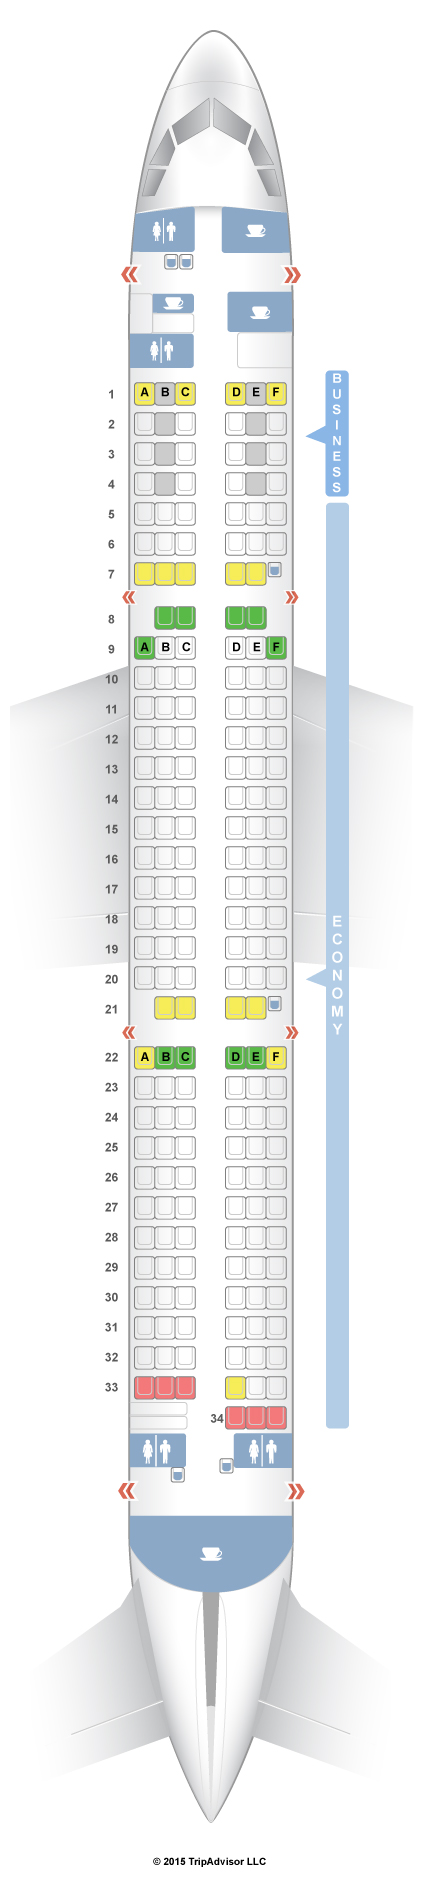 Airbus A330 Finnair Seating Chart